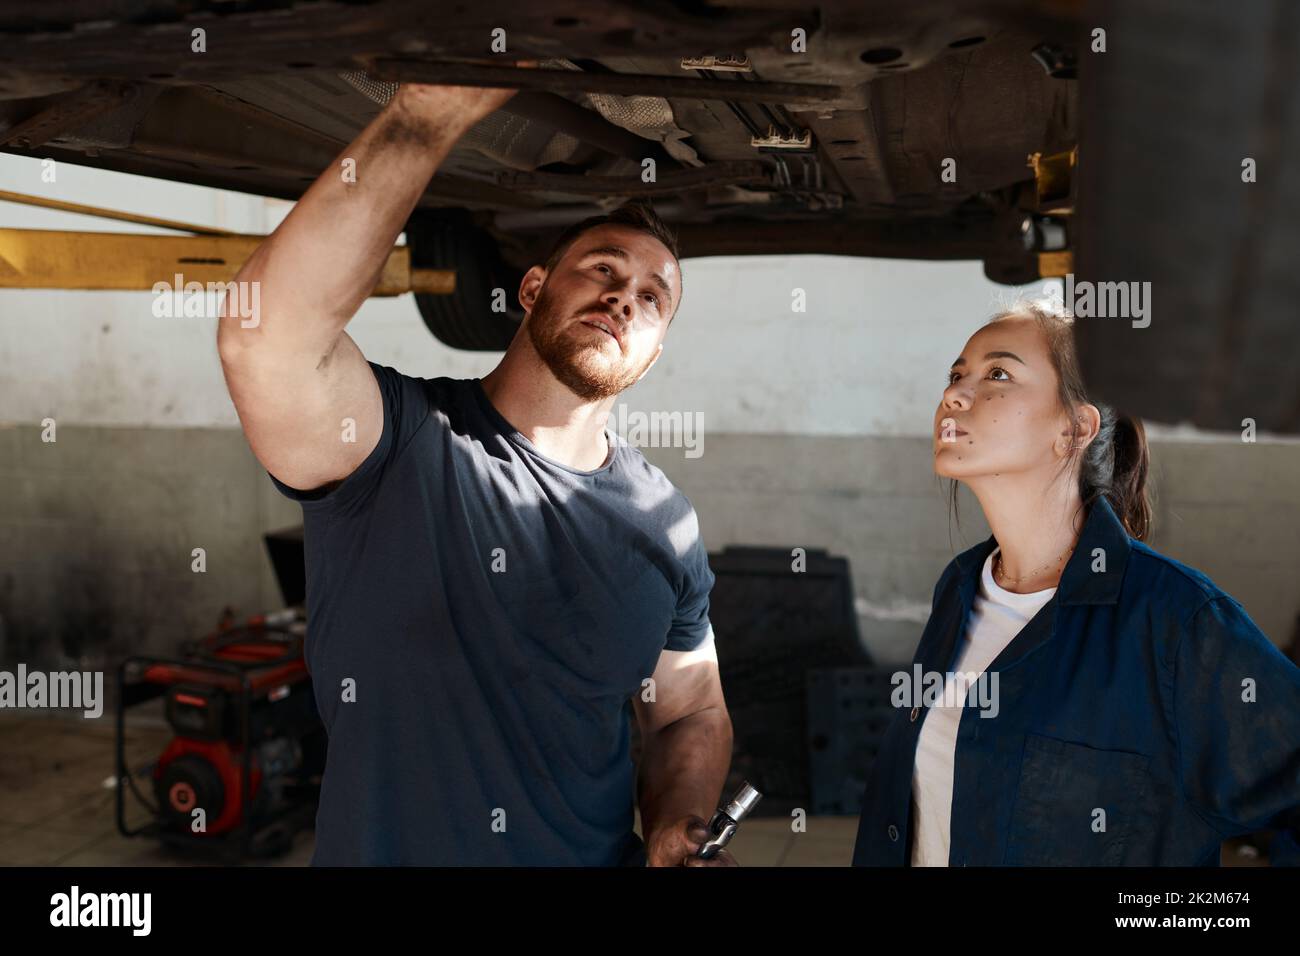 Le service de premier ordre est notre principale automobile. Photo de deux mécaniciens travaillant ensemble sous une voiture soulevée. Banque D'Images